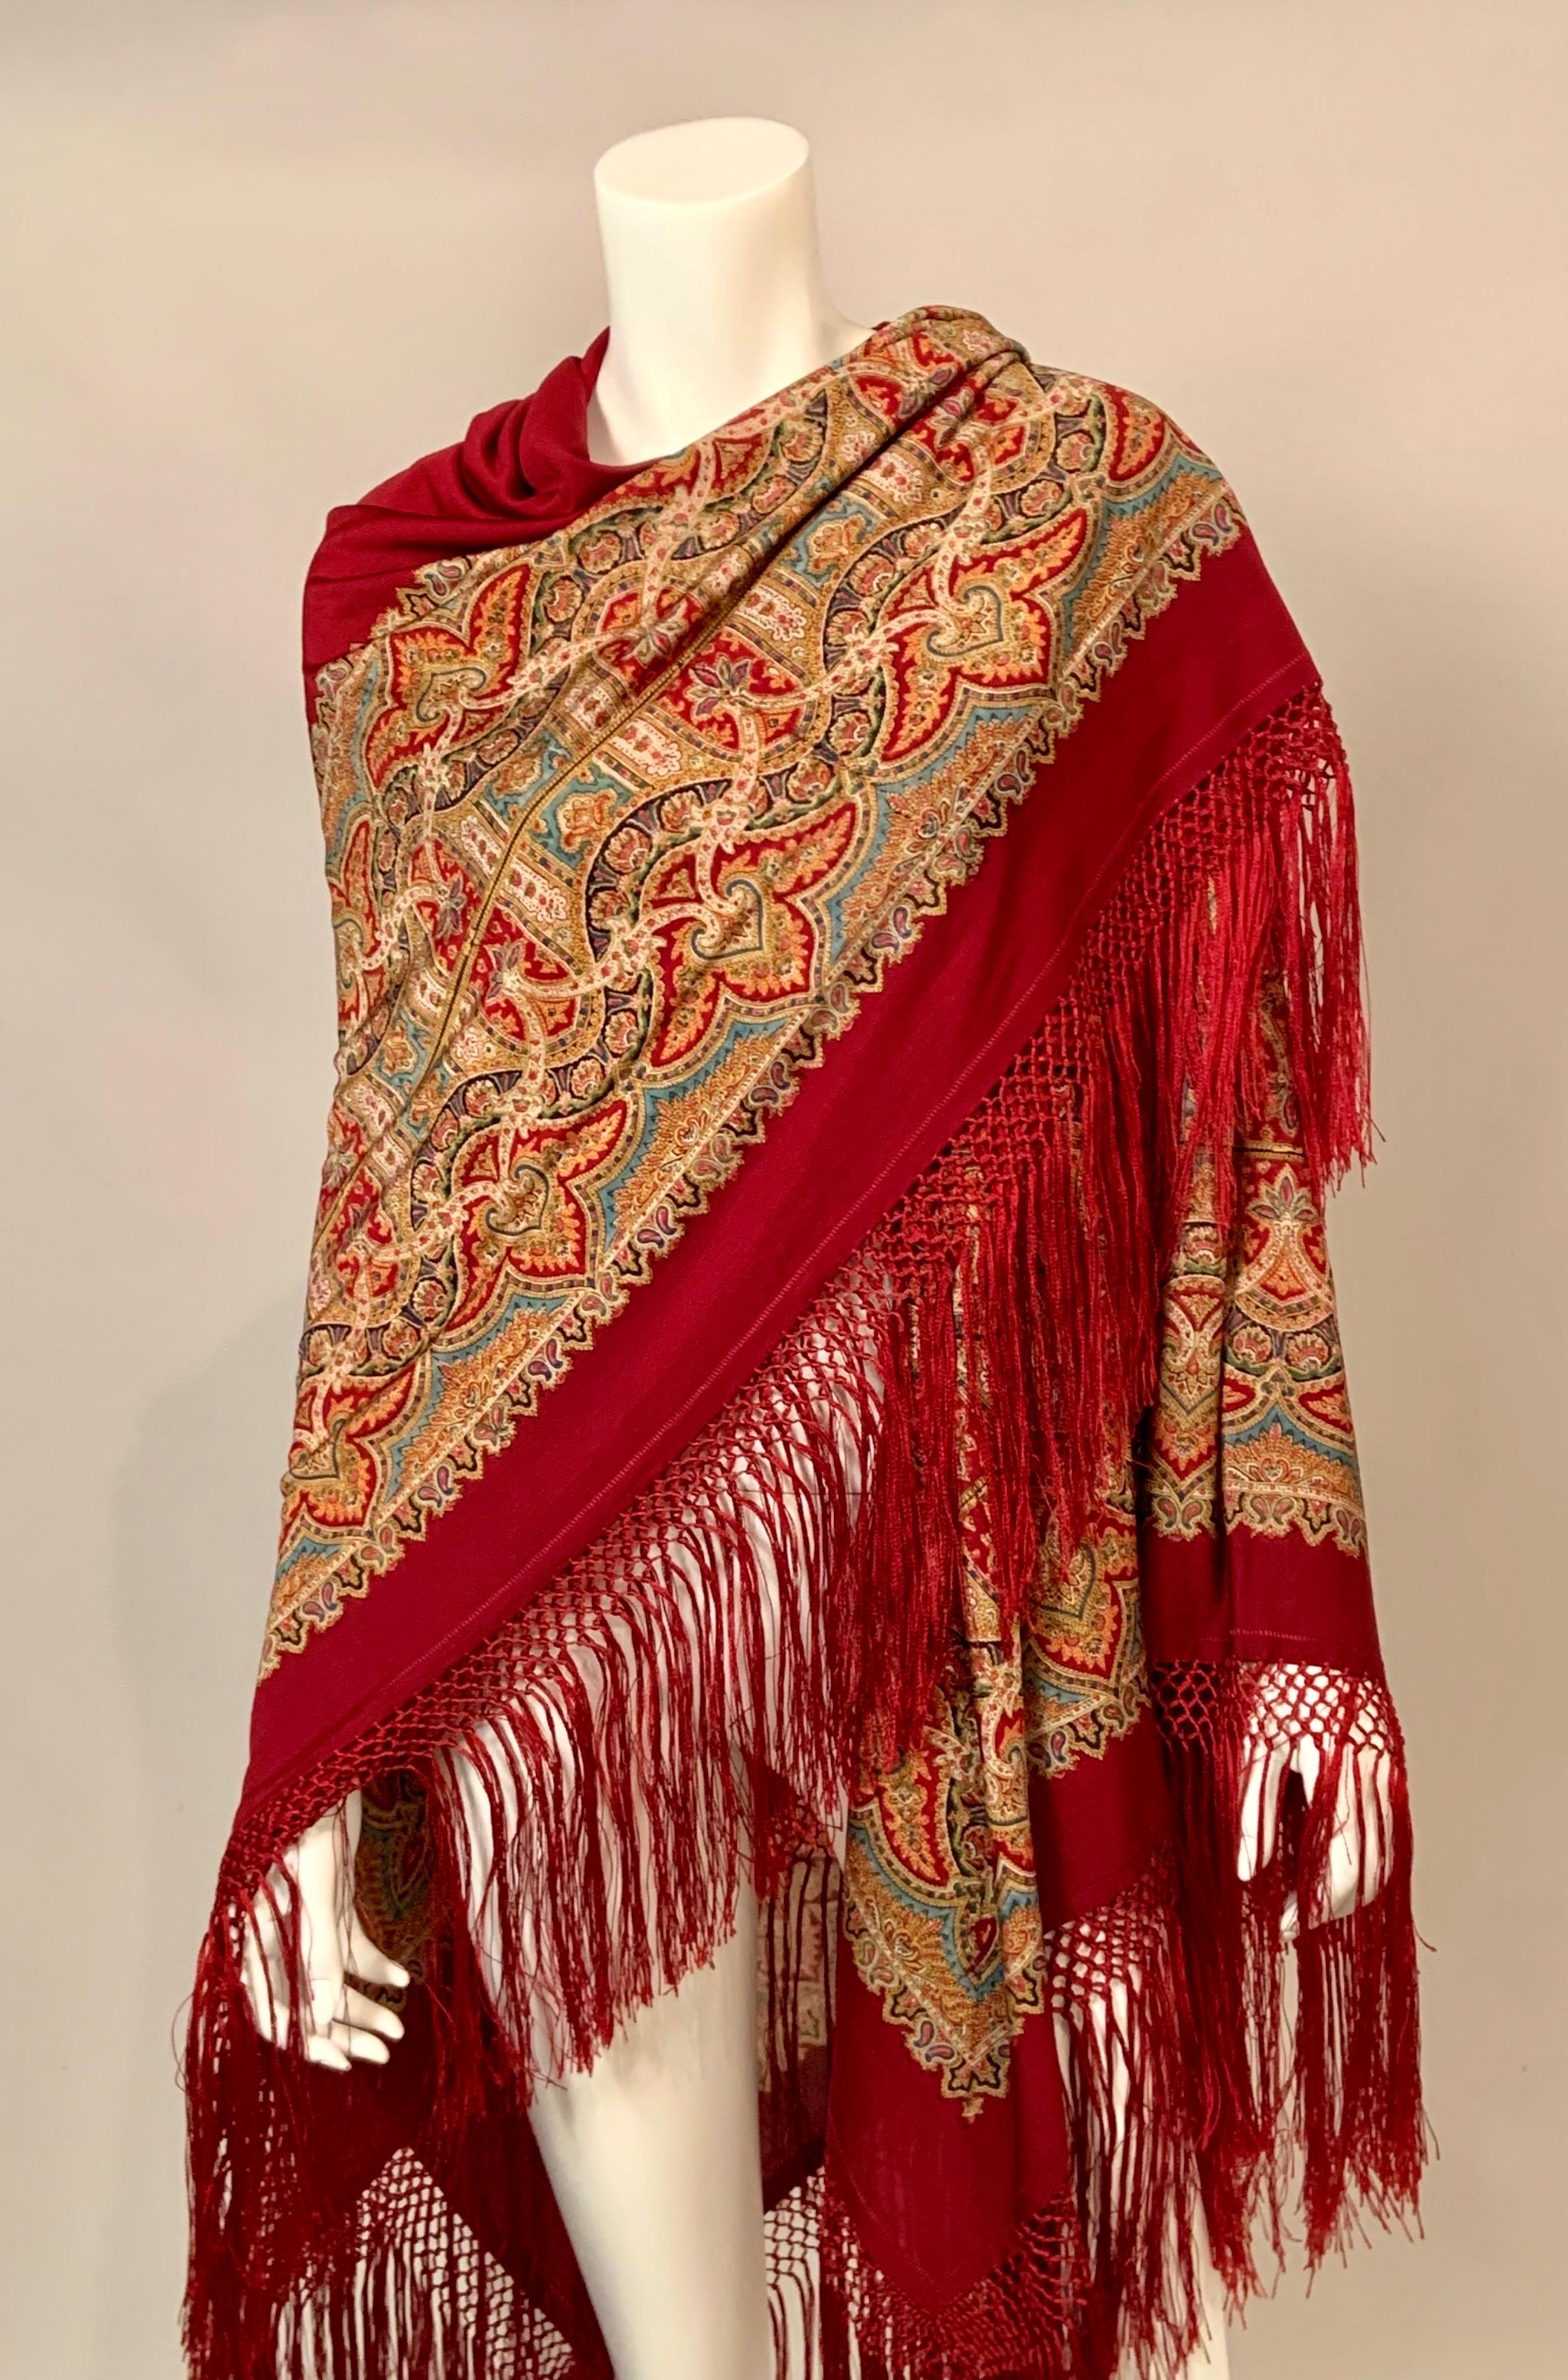 A beautiful rich burgundy red shawl has a 14